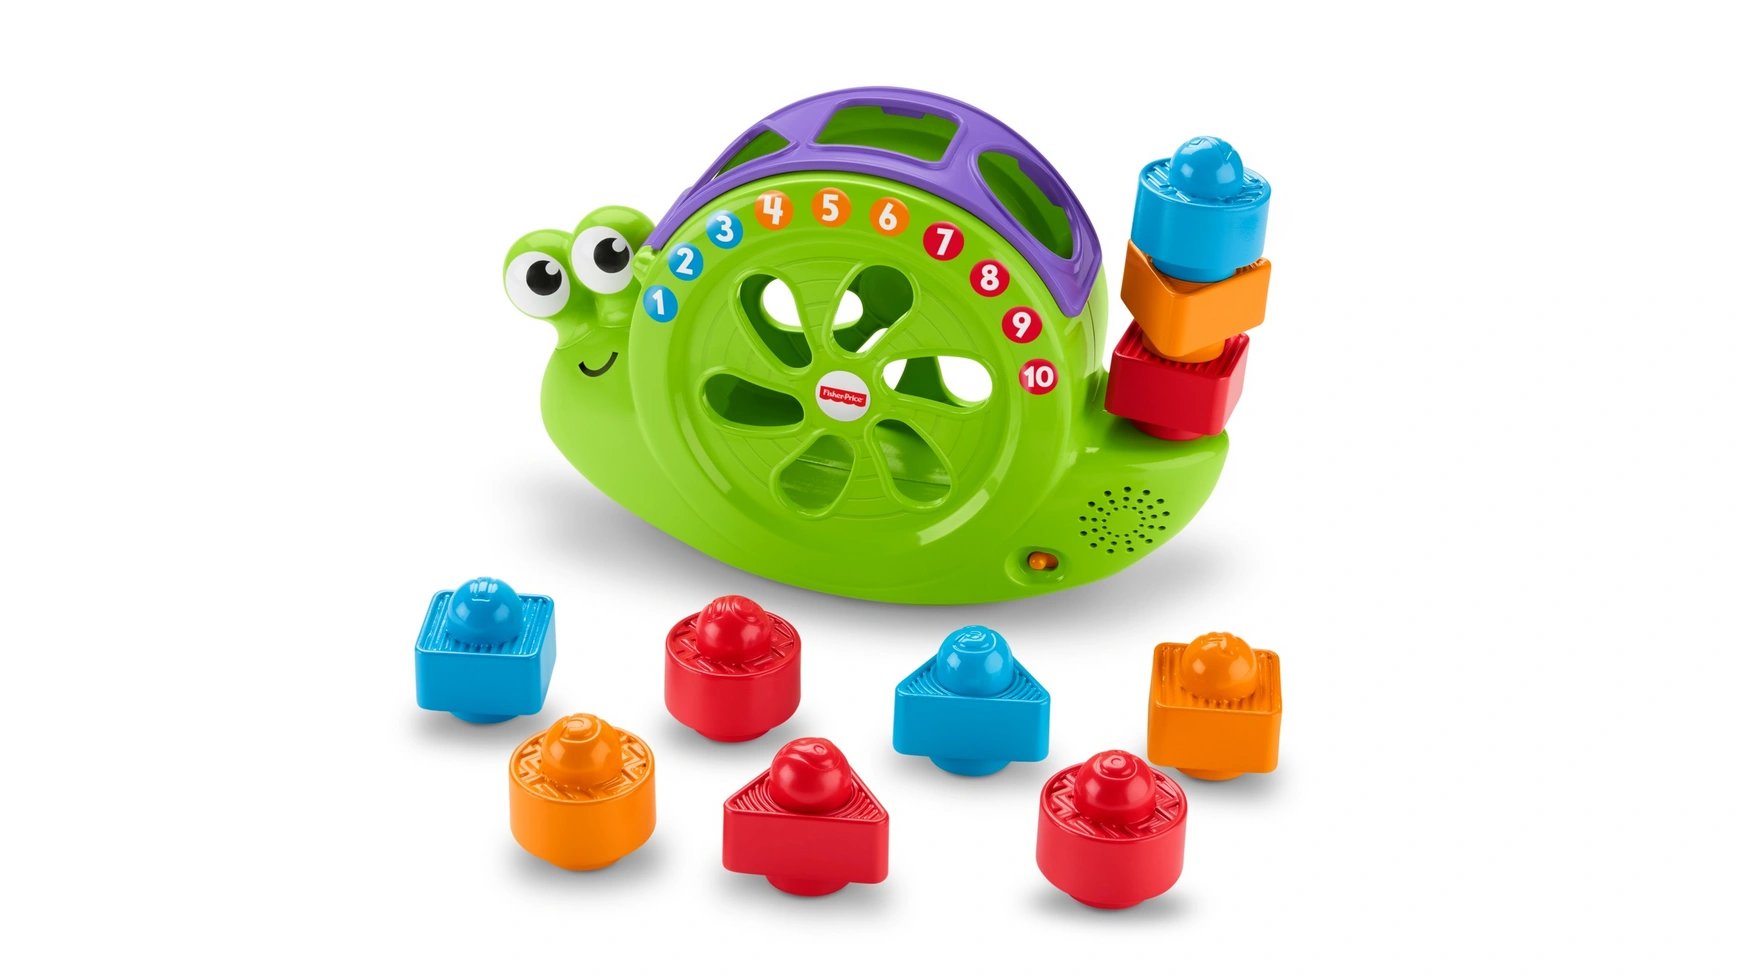 Музыкальная улитка Fisher Price Babies, подключаемая игрушка, складывающаяся игра, развивающая игрушка игрушка обучающая умка сортер улитка 288545